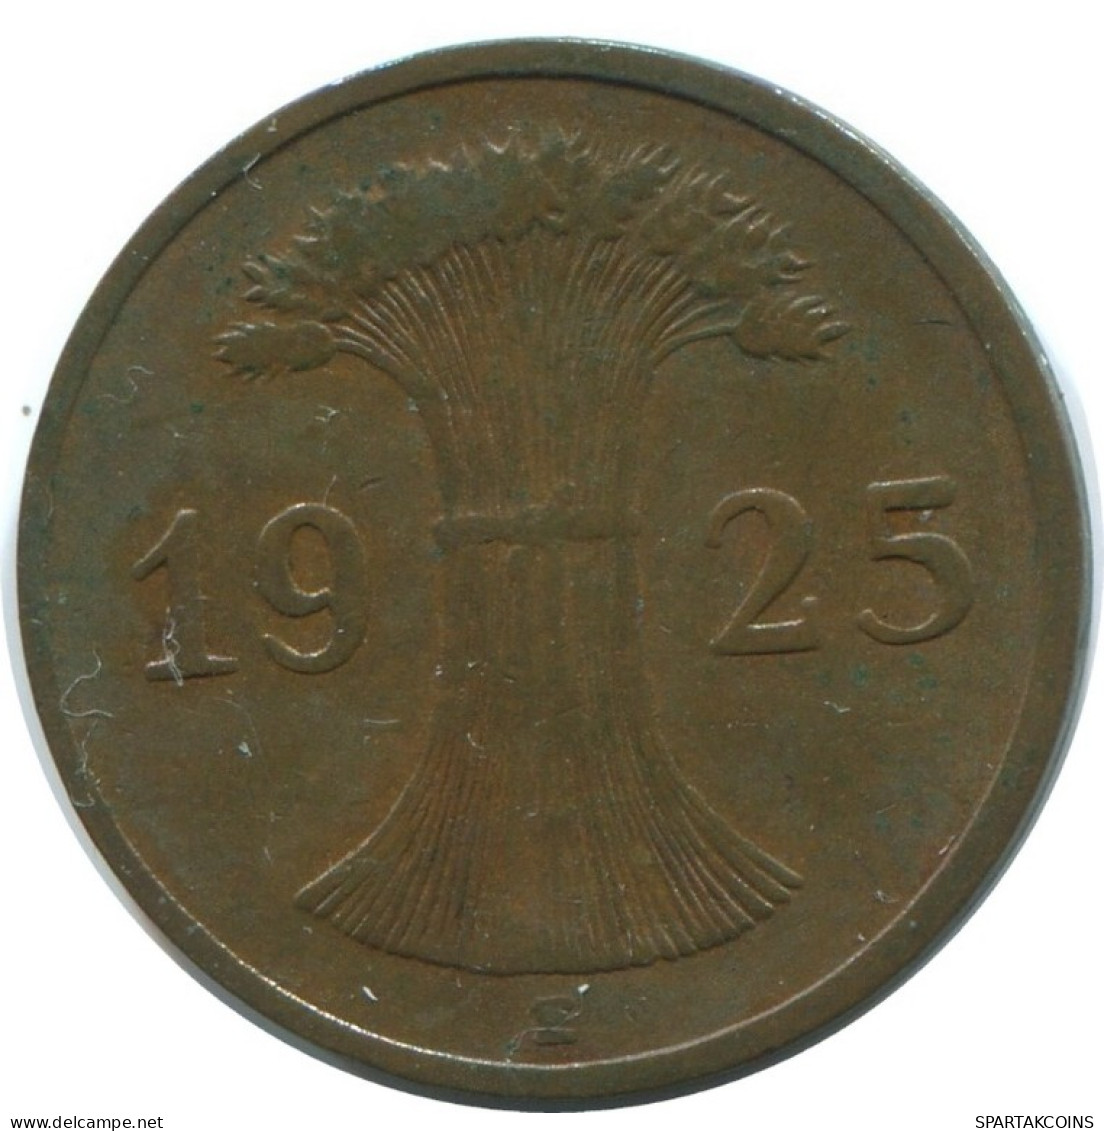 1 REICHSPFENNIG 1925 E DEUTSCHLAND Münze GERMANY #AE215.D.A - 1 Rentenpfennig & 1 Reichspfennig